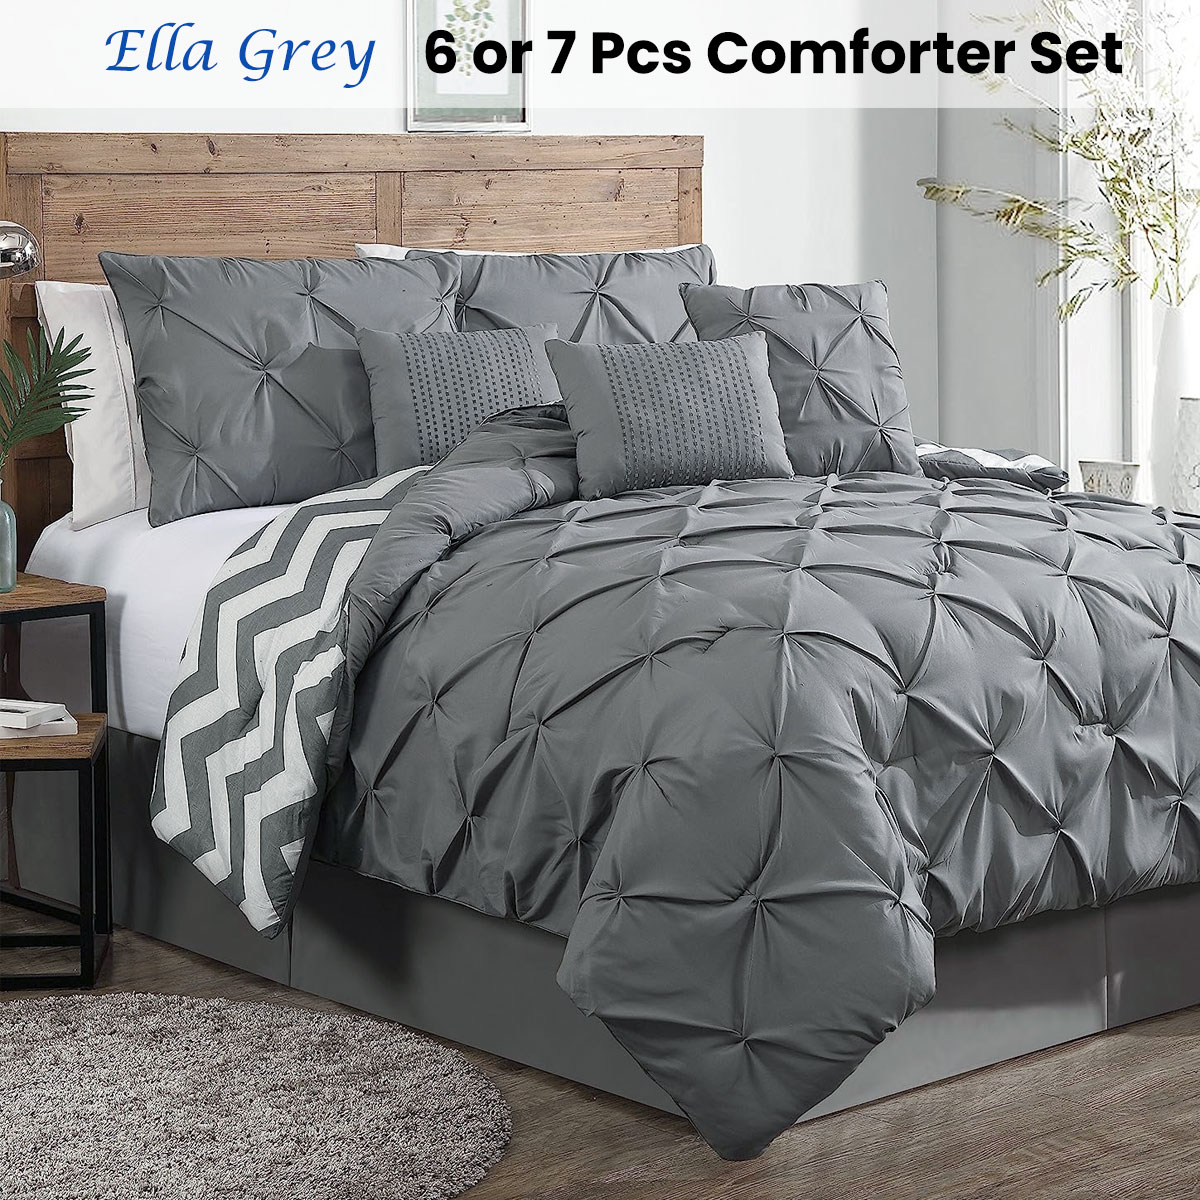 6 or 7 Pcs Ella Grey Comforter Set by J Elliot Home